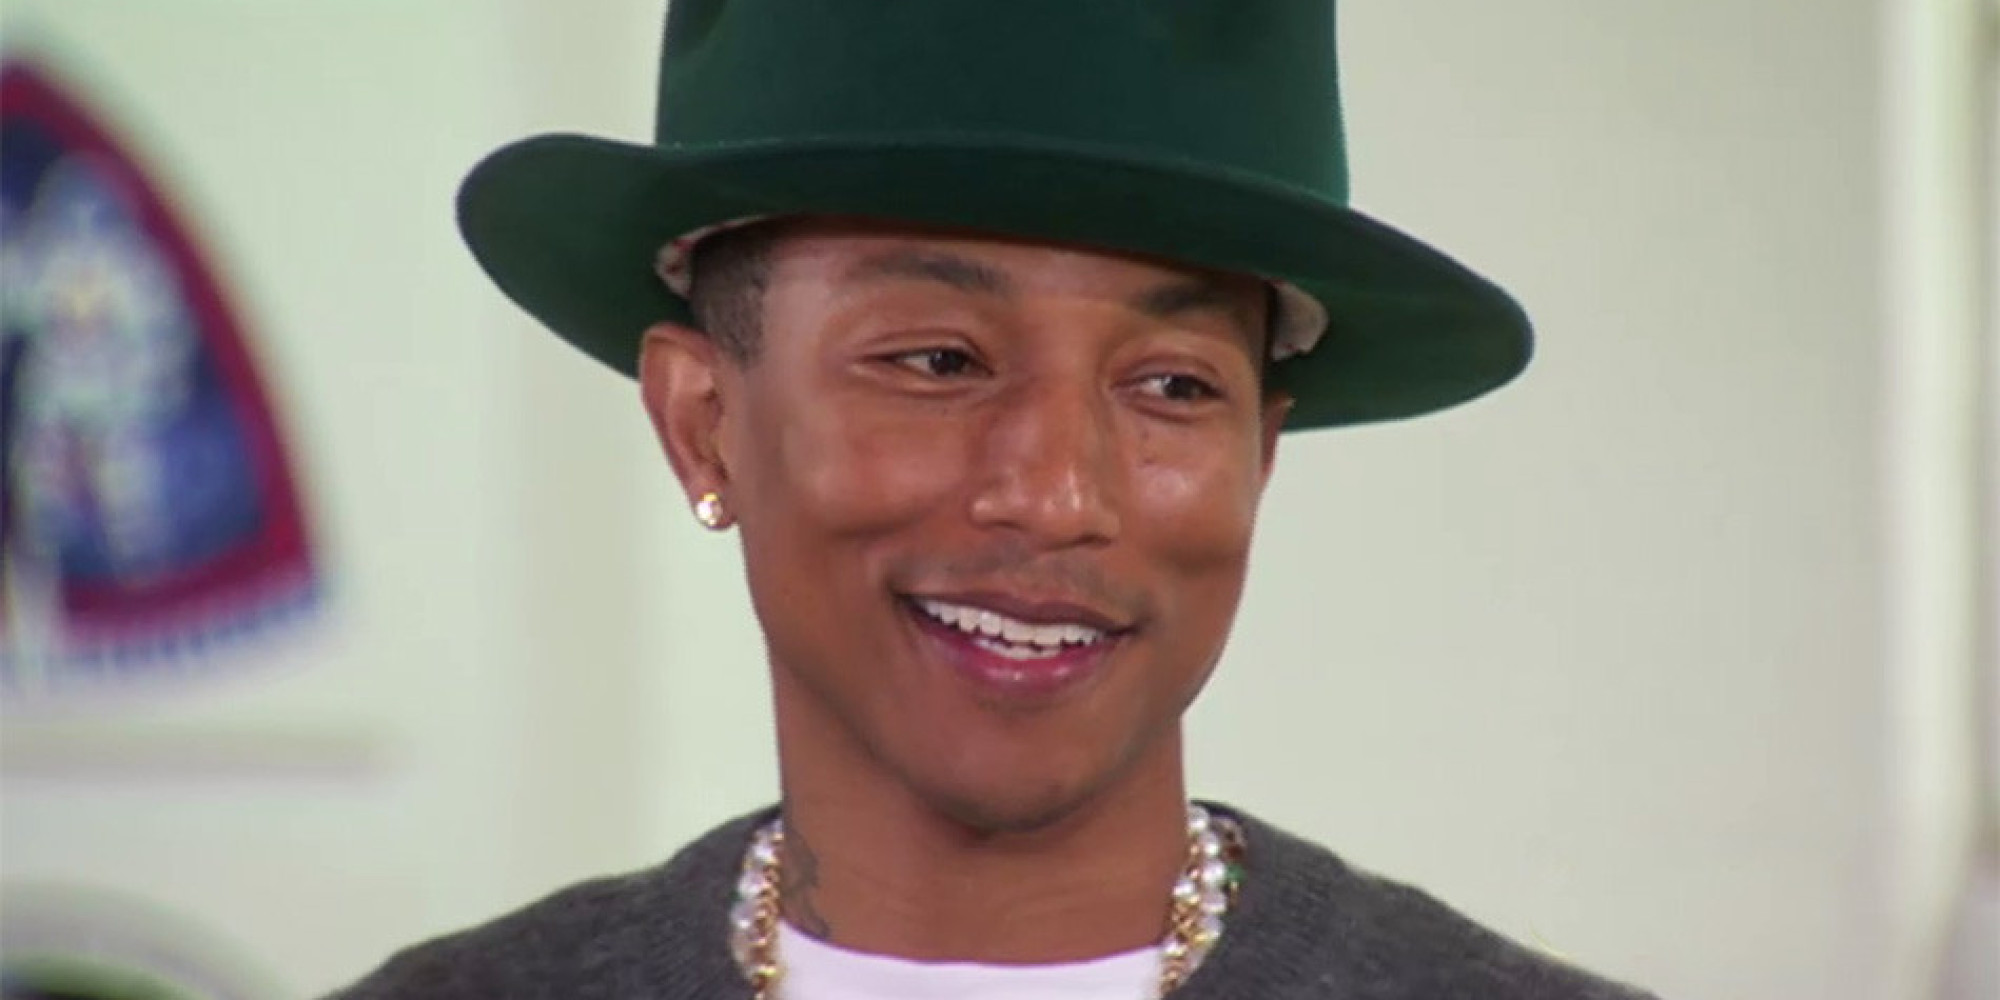 Pharrell Williams wallpaper, Music, HQ Pharrell Williams pictureK Wallpaper 2019